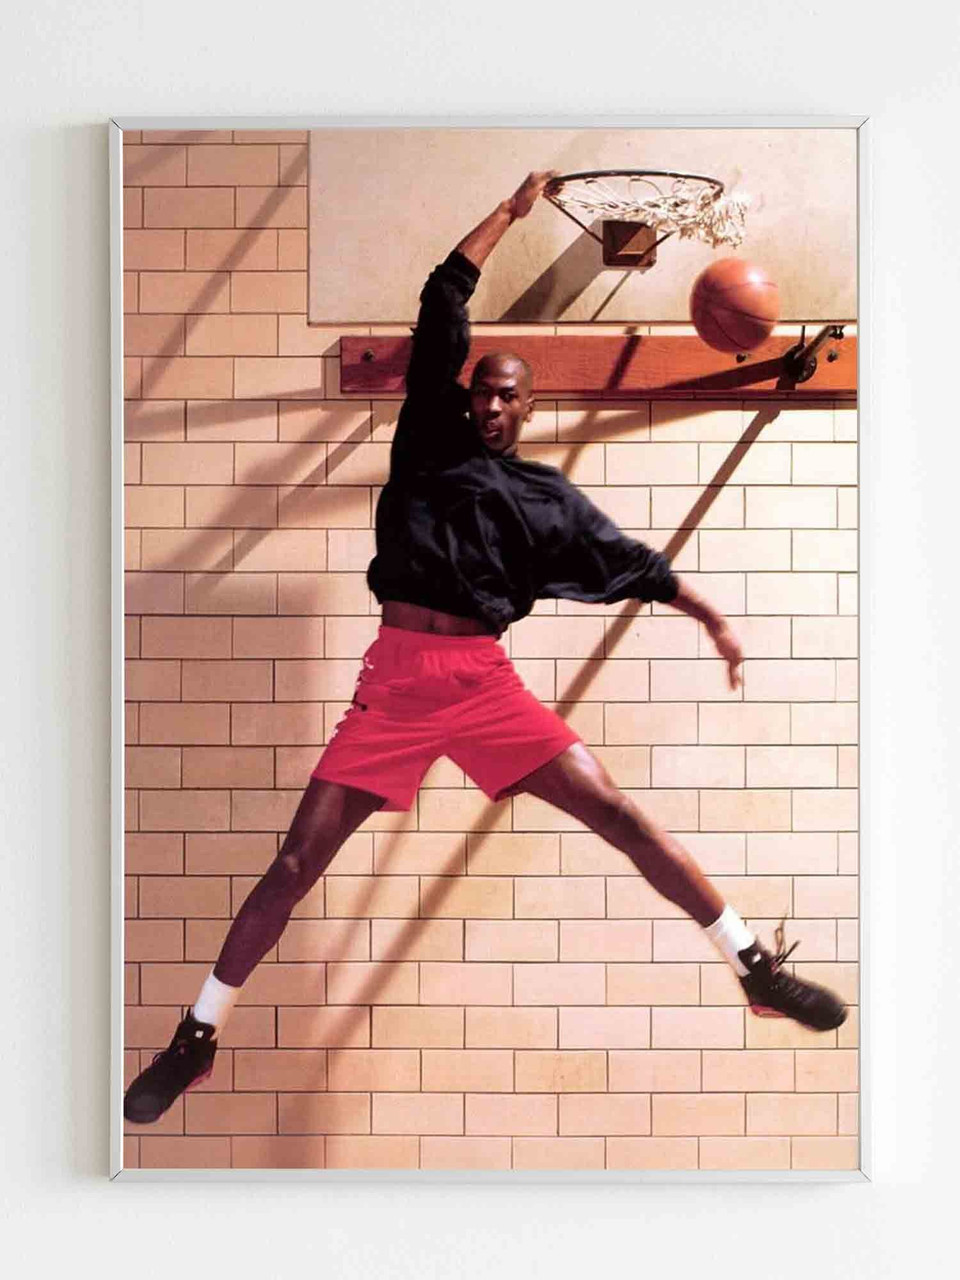 Michael Jordan Logo Wallpaper (74+ pictures)